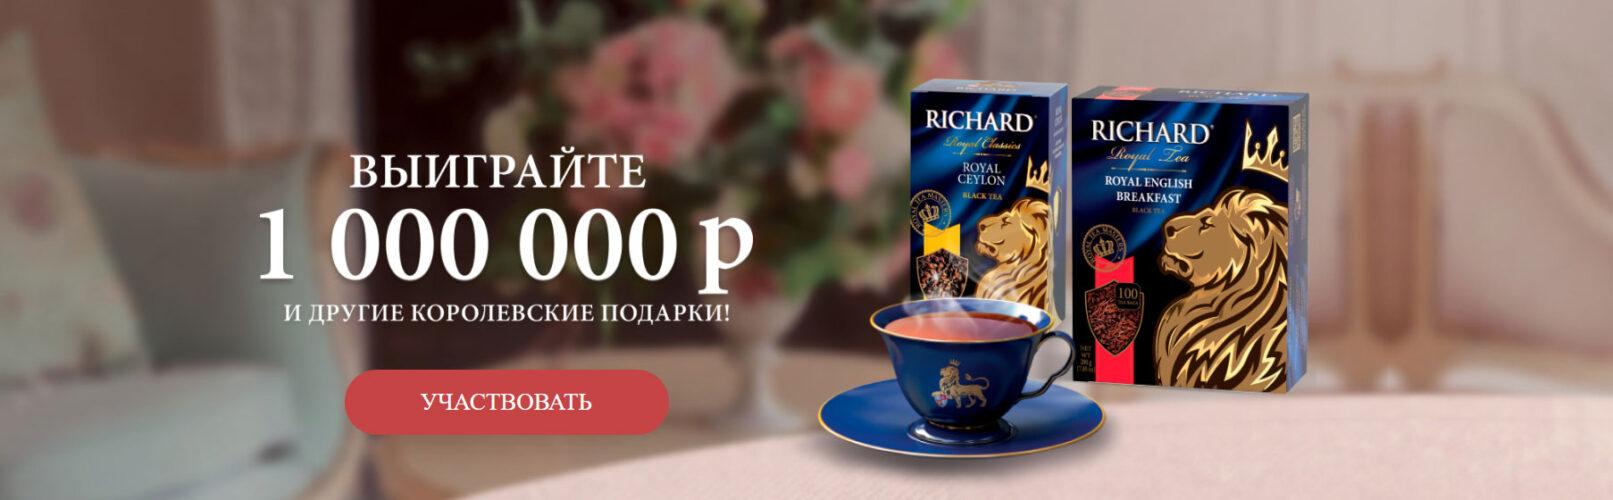 Акция «Королевское чаепитие Richard в Магните» 